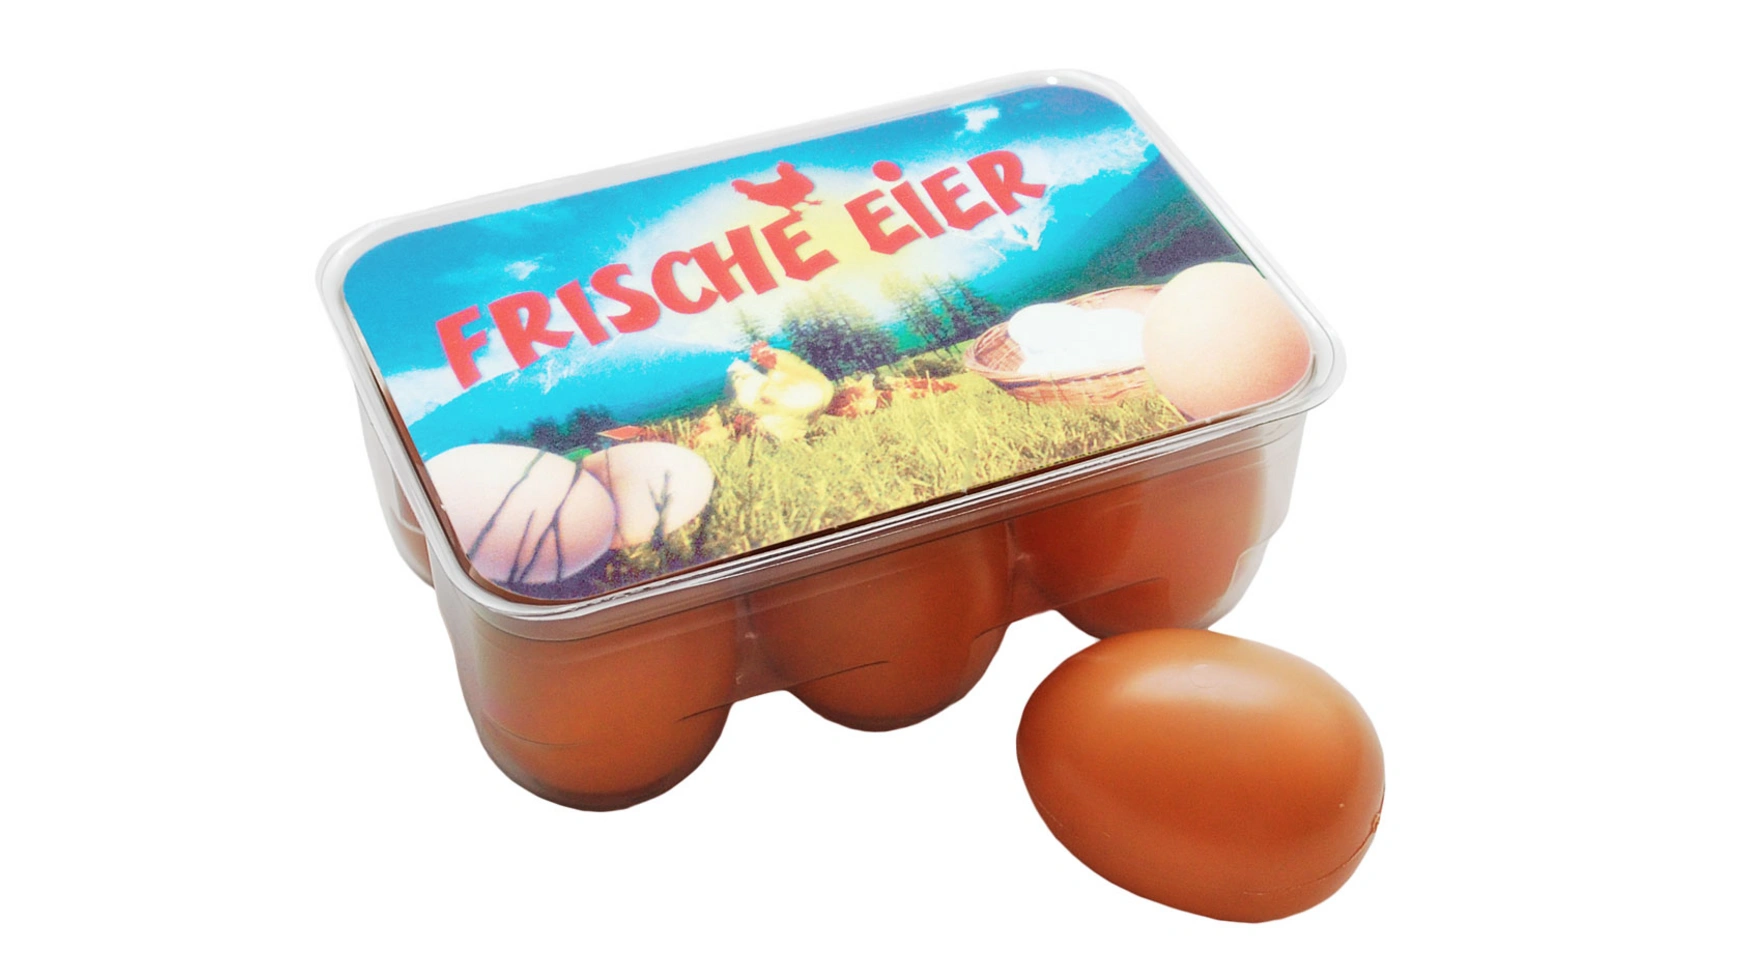 6 пластиковых яиц в коробочке для яиц Tanner инструмент для резки яиц инструмент для резки яиц разделитель для нарезки яиц необычный разделитель для резки рассыпных яиц многофункци